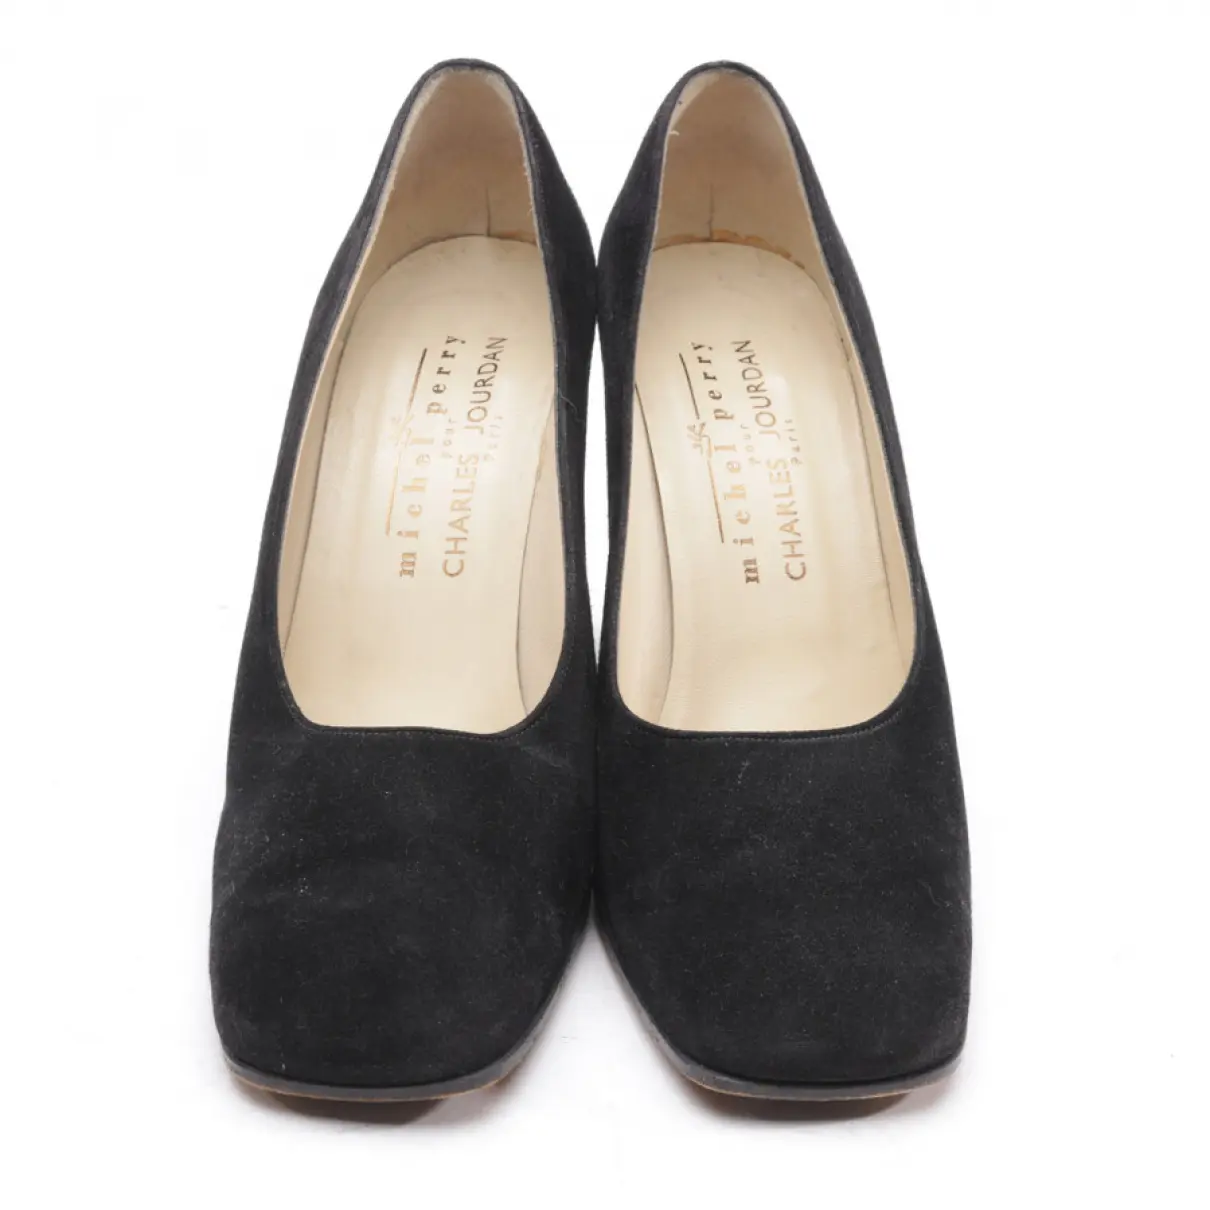 Buy Charles Jourdan Leather heels online